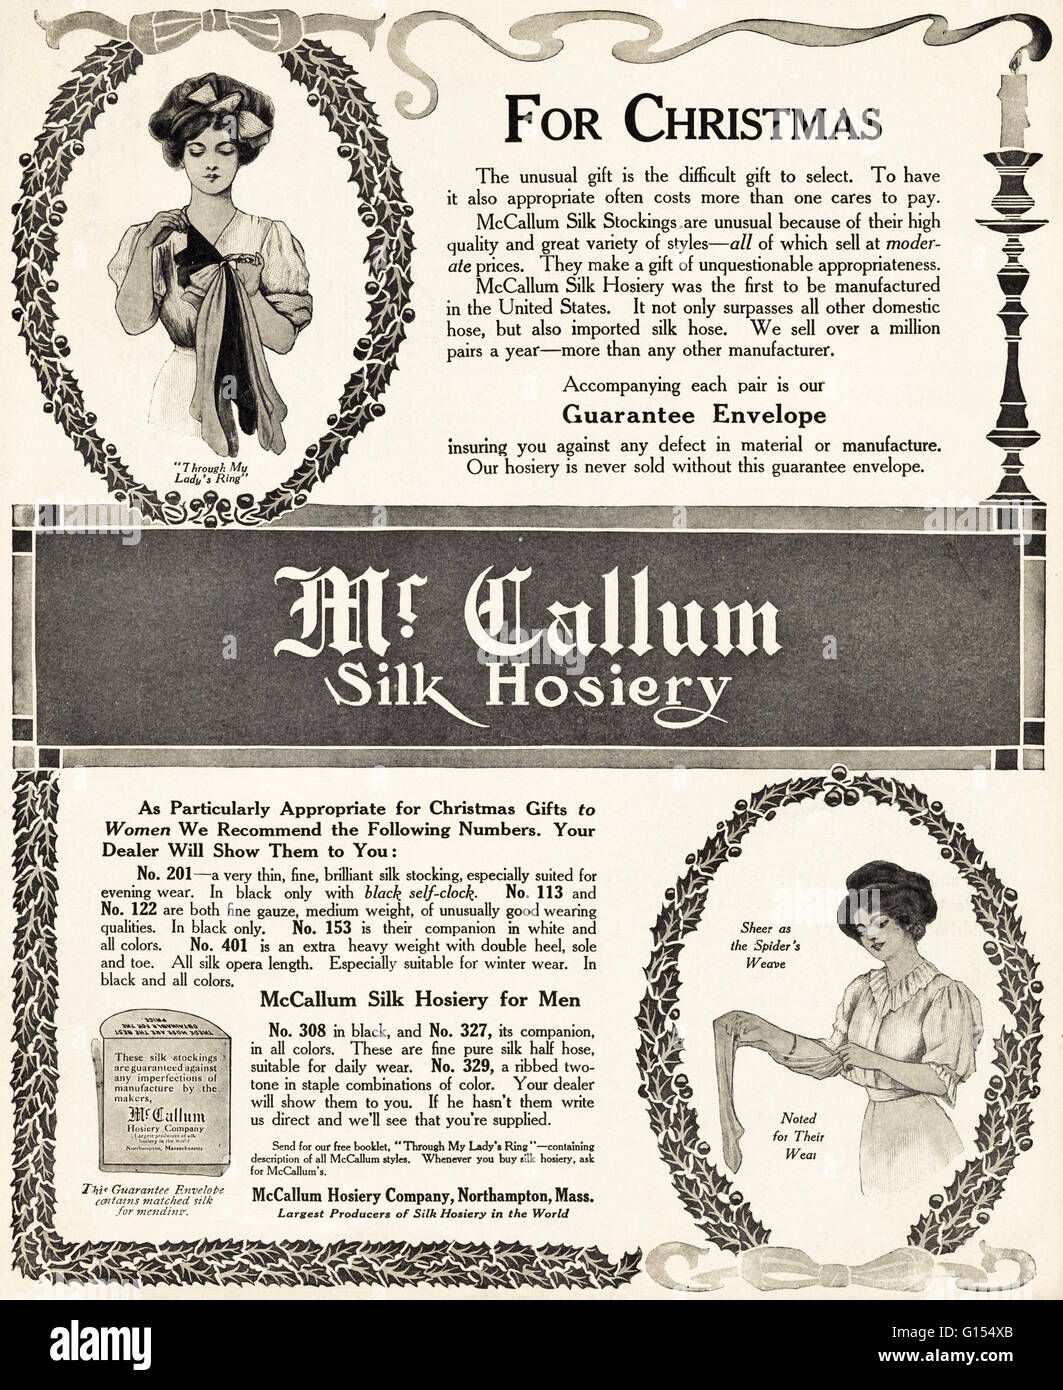 Old vintage original magazine américain annonce à partir de l'époque édouardienne datée 1910. M. Callum publicitaire bas de soie pour Noël par McCallum Hosiery Company de Northampton Massachusetts USA Banque D'Images